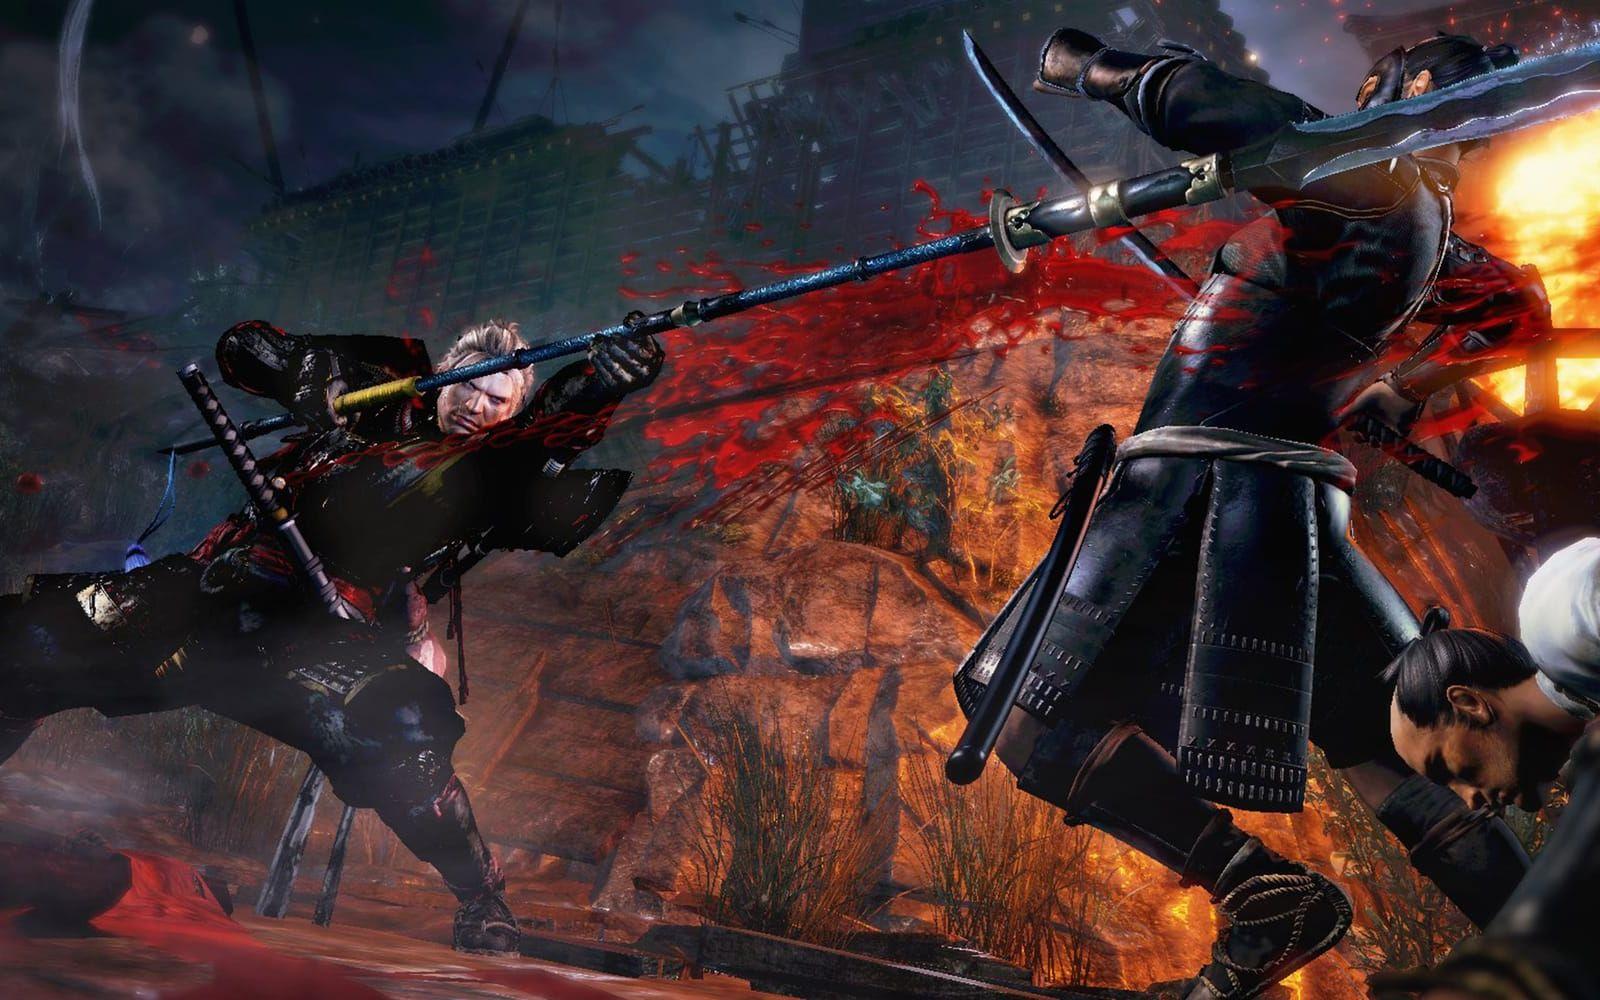 <strong>NIOH.</strong> Samurajer och demoner i 1600-talsmiljö från teamet om ligger bakom Ninja Gaiden. Släpps 9 februari. (PS4)